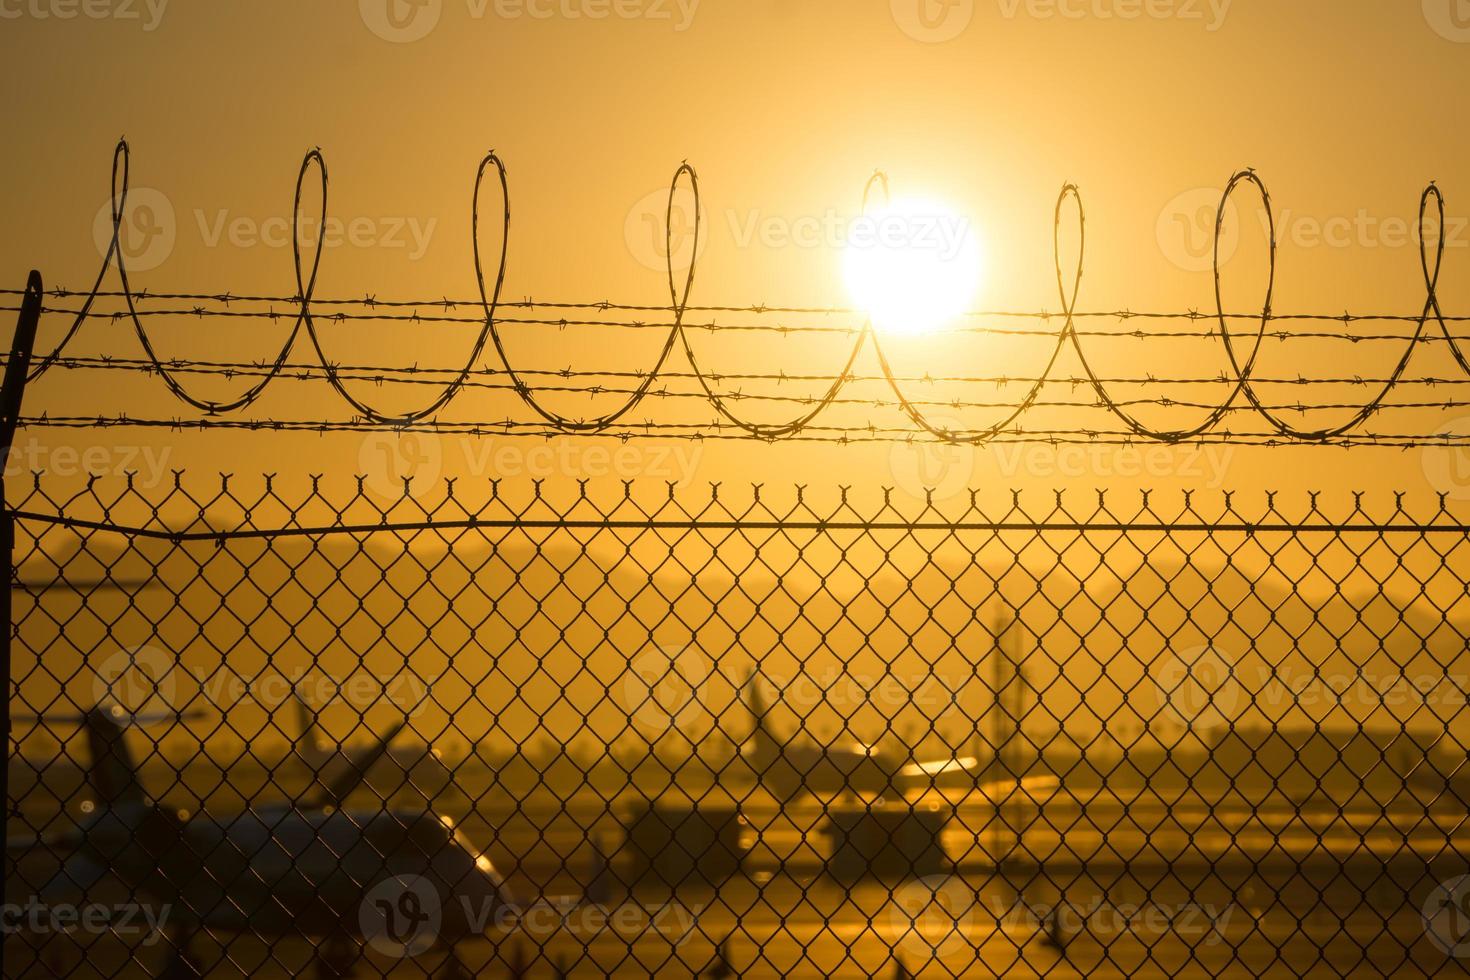 säkerhetsstaket runt den internationella flygplatsen vid soluppgång foto